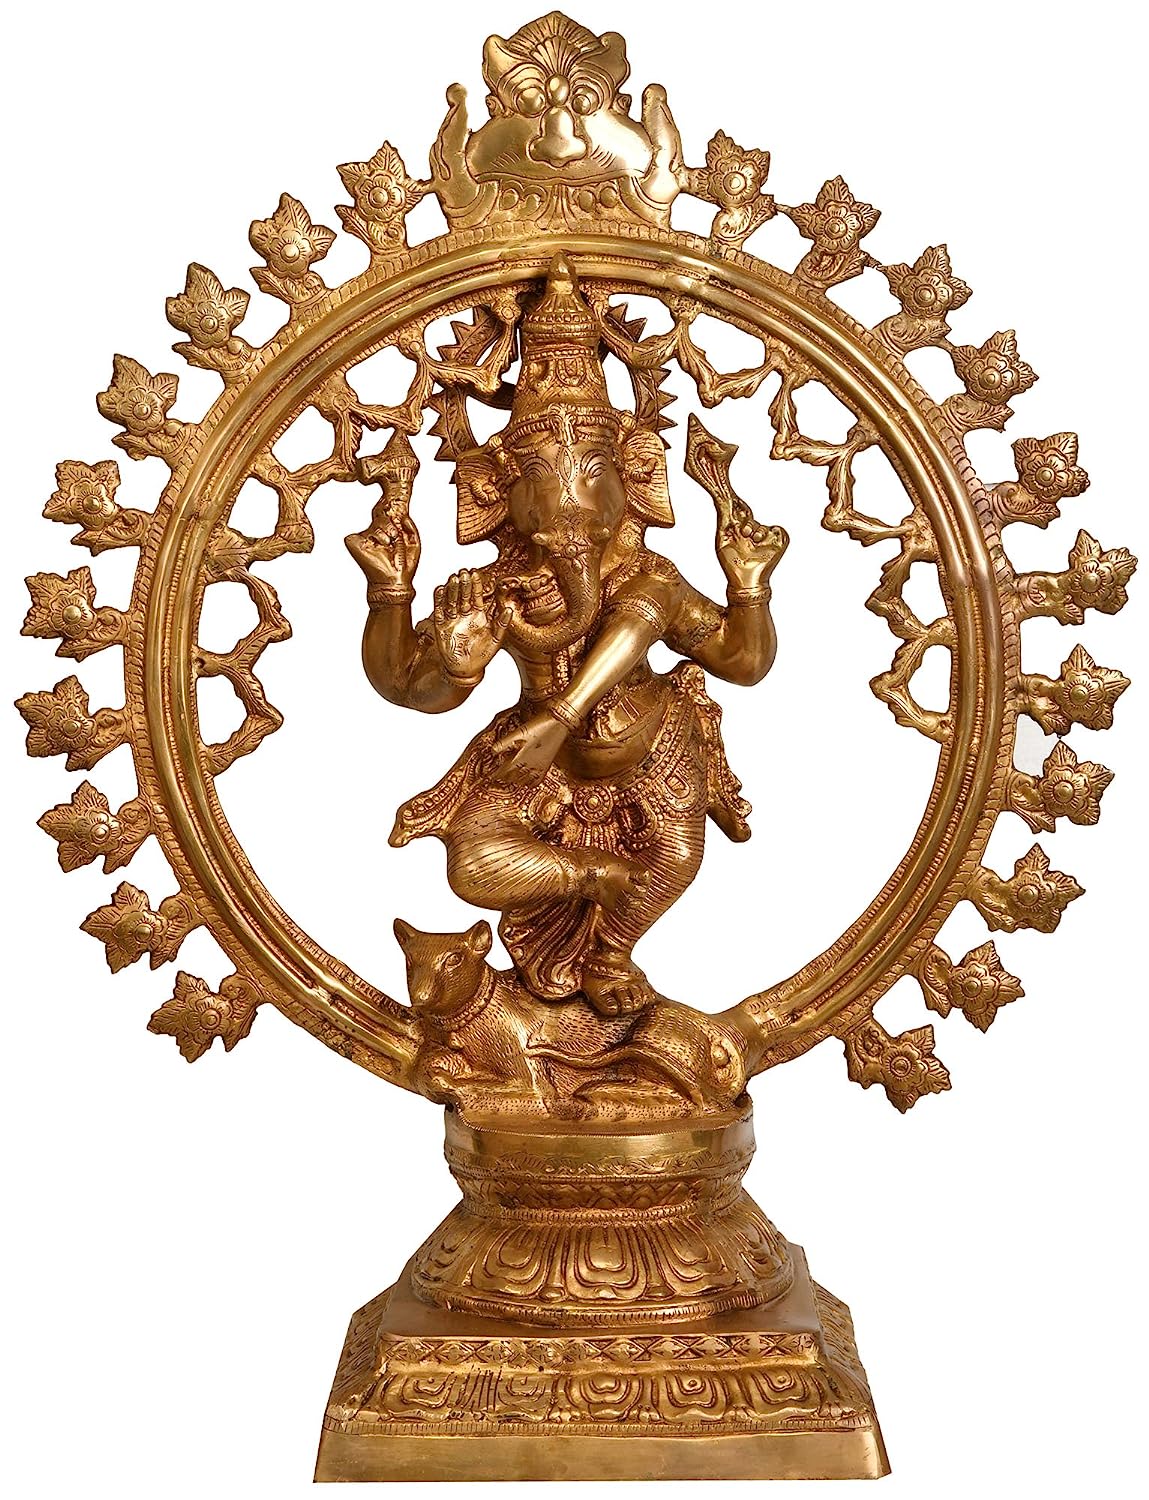 Dancing Ganesha - Natraj Pose | Ganesha, Ganesha art, Ganesh art